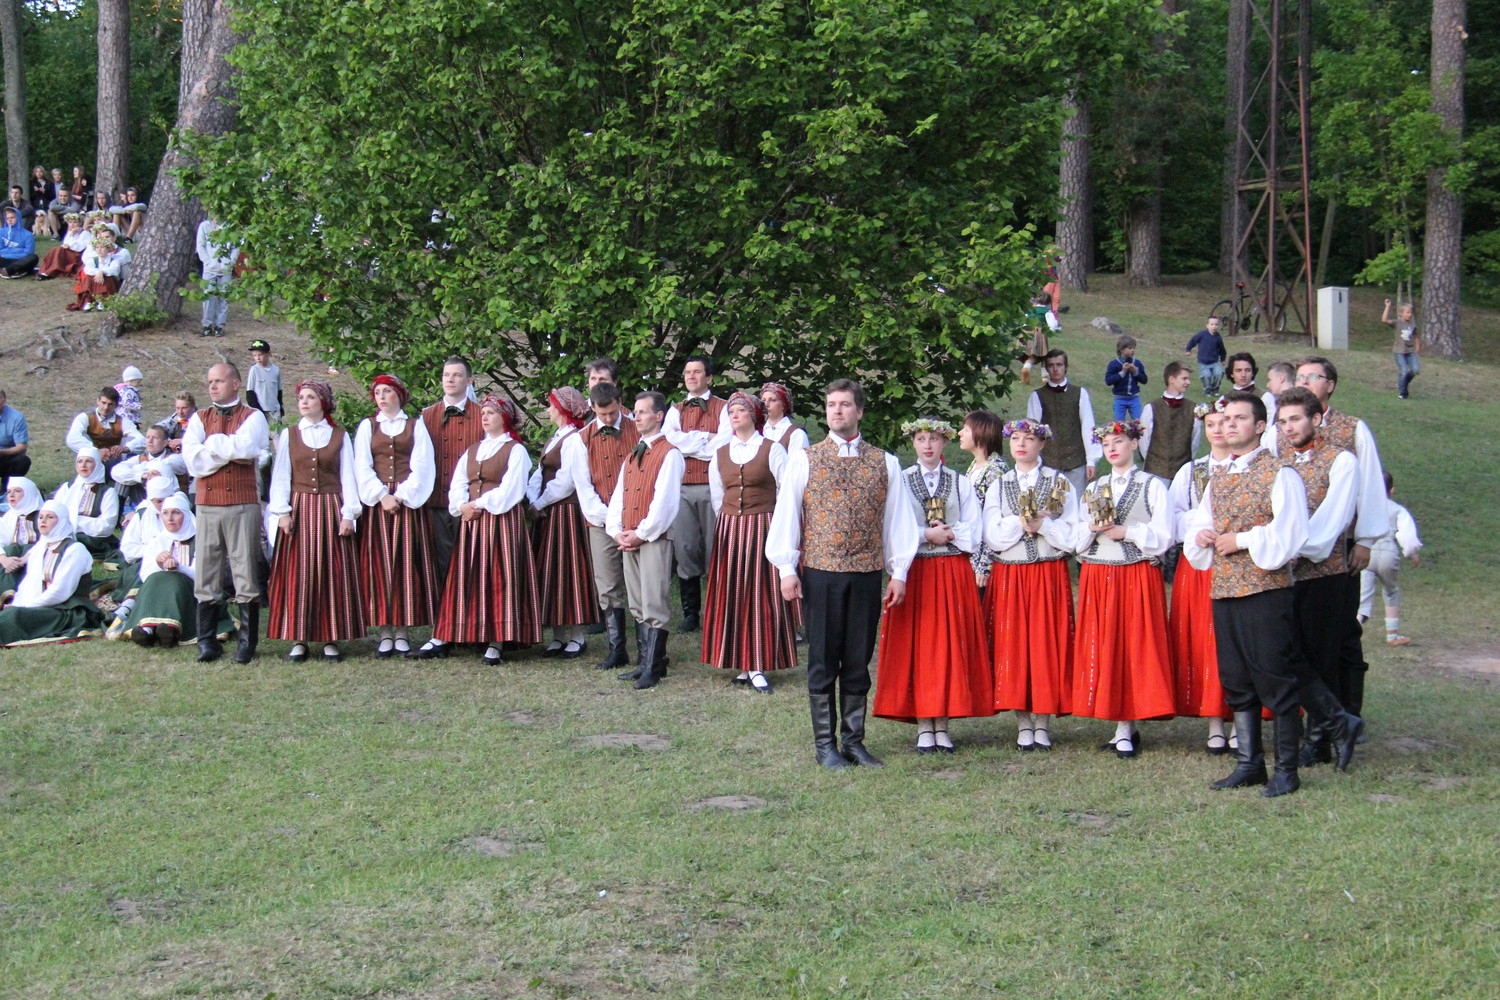 VIII Ziemeļu un Baltijas valstu Dziesmu svētku ieskaņu koncerts Durbes estrādē